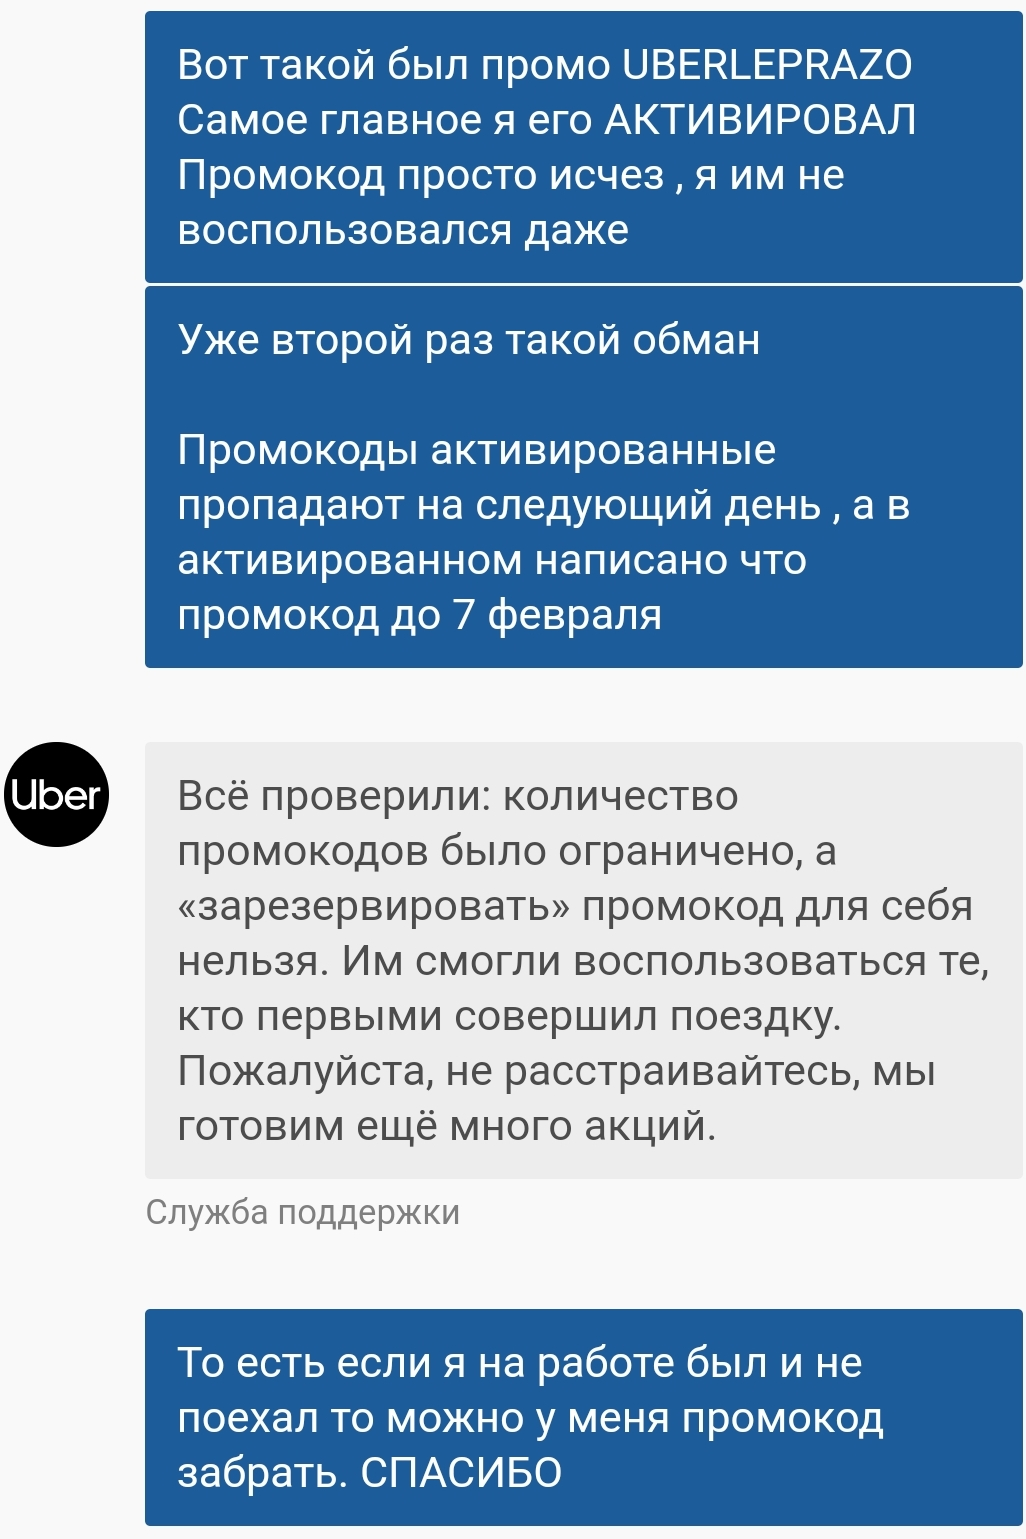 SmartSelect_20190205-132955_Uber Russia.jpg